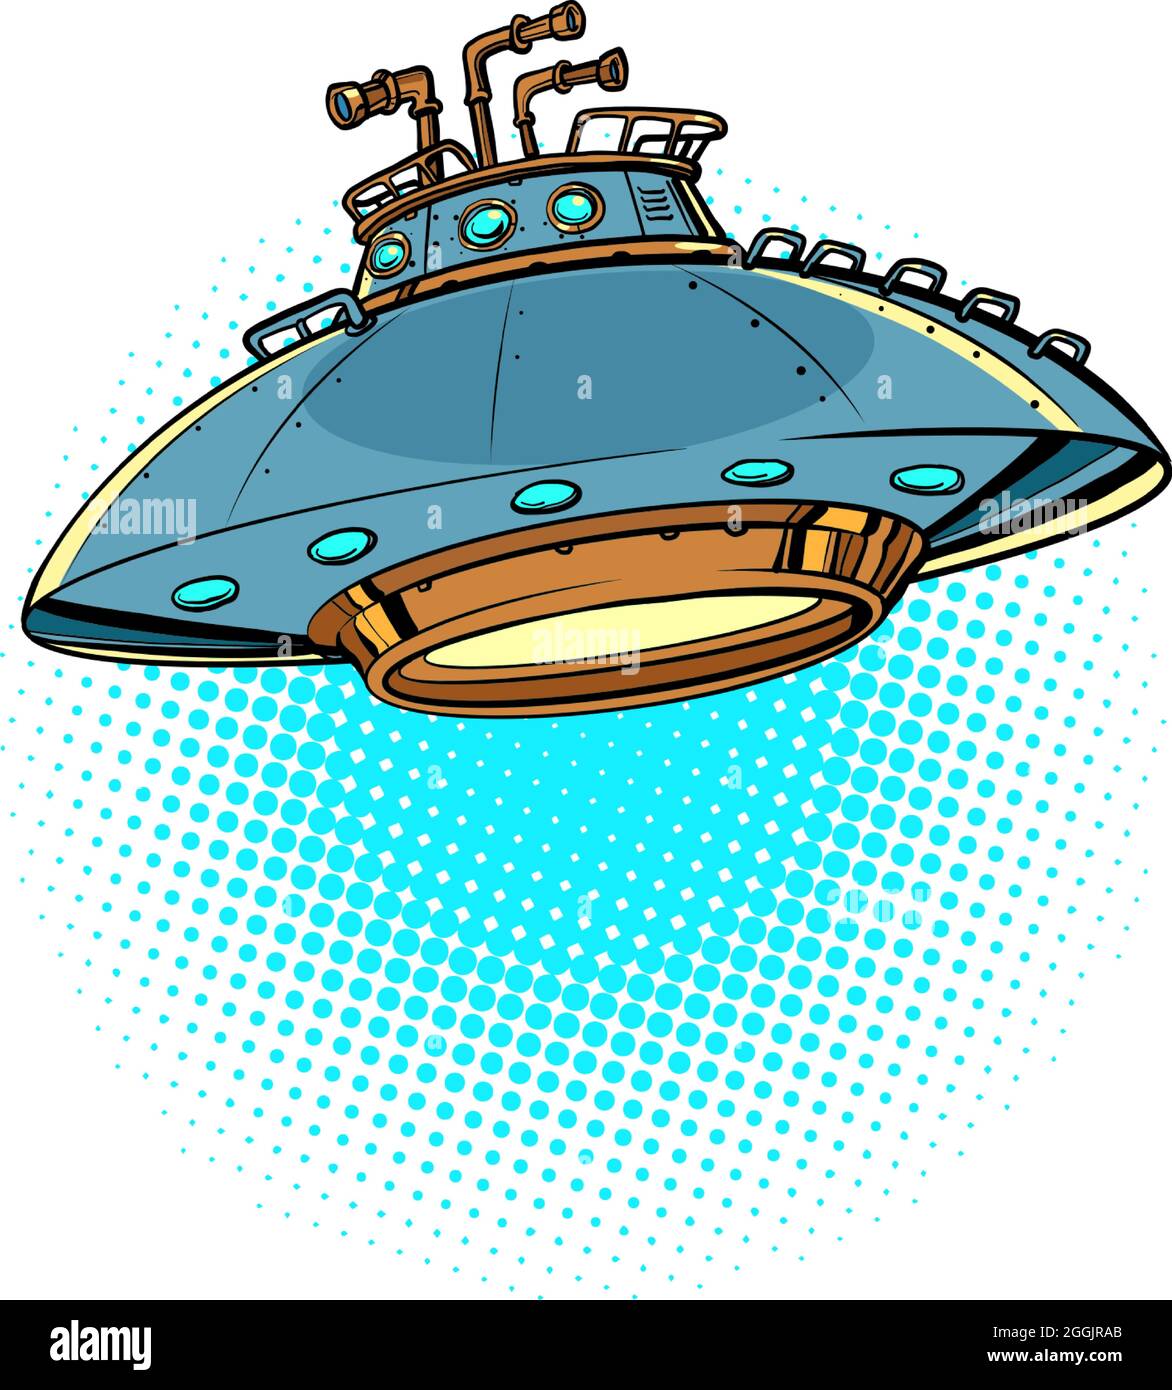 Platillo volador OVNI aislado en un fondo neutral. Nave espacial extraterrestre Ilustración del Vector